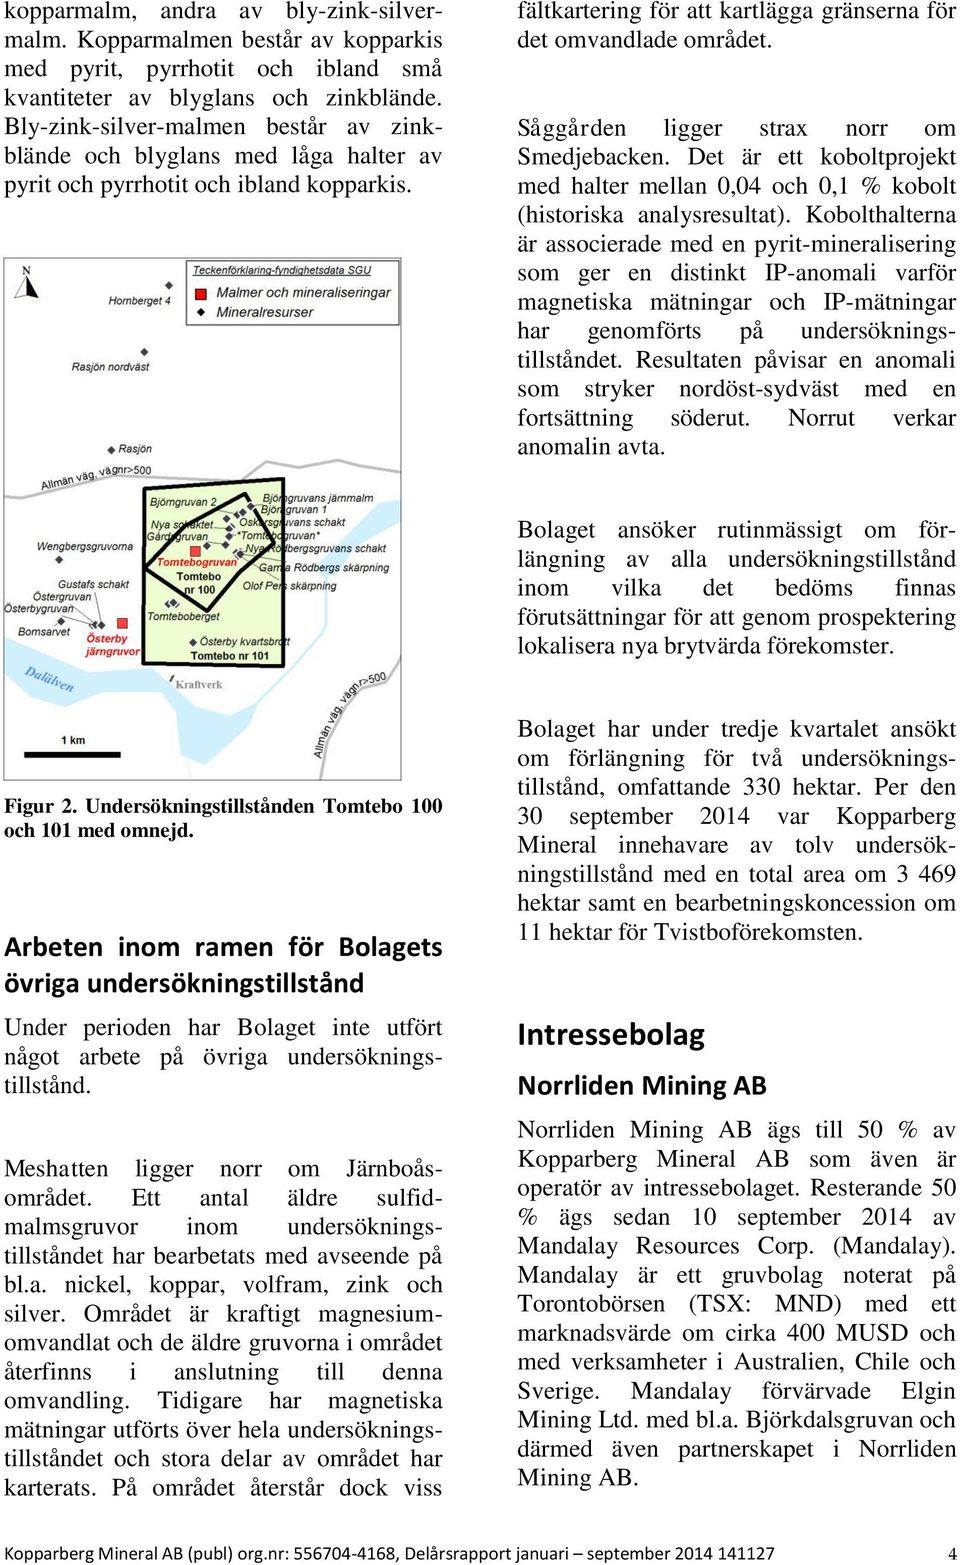 Såggården ligger strax norr om Smedjebacken. Det är ett koboltprojekt med halter mellan 0,04 och 0,1 % kobolt (historiska analysresultat).